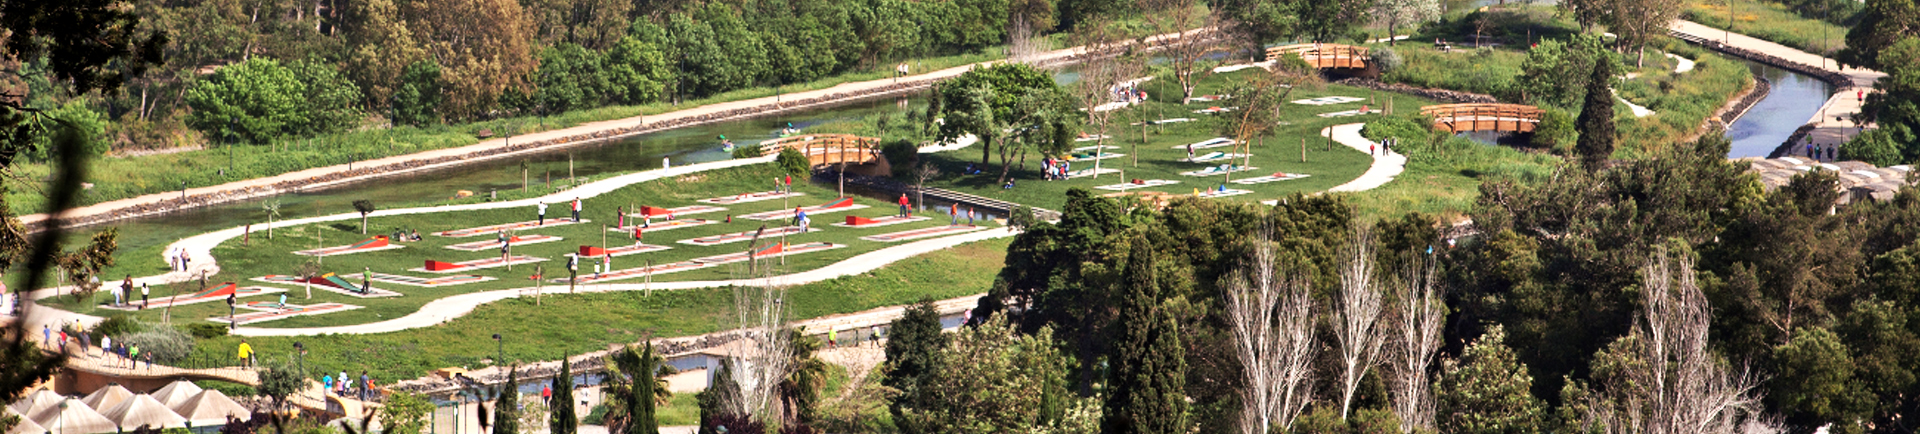 Vista aérea do parque de minigolfe do Centro Desportivo Nacional do Jamor